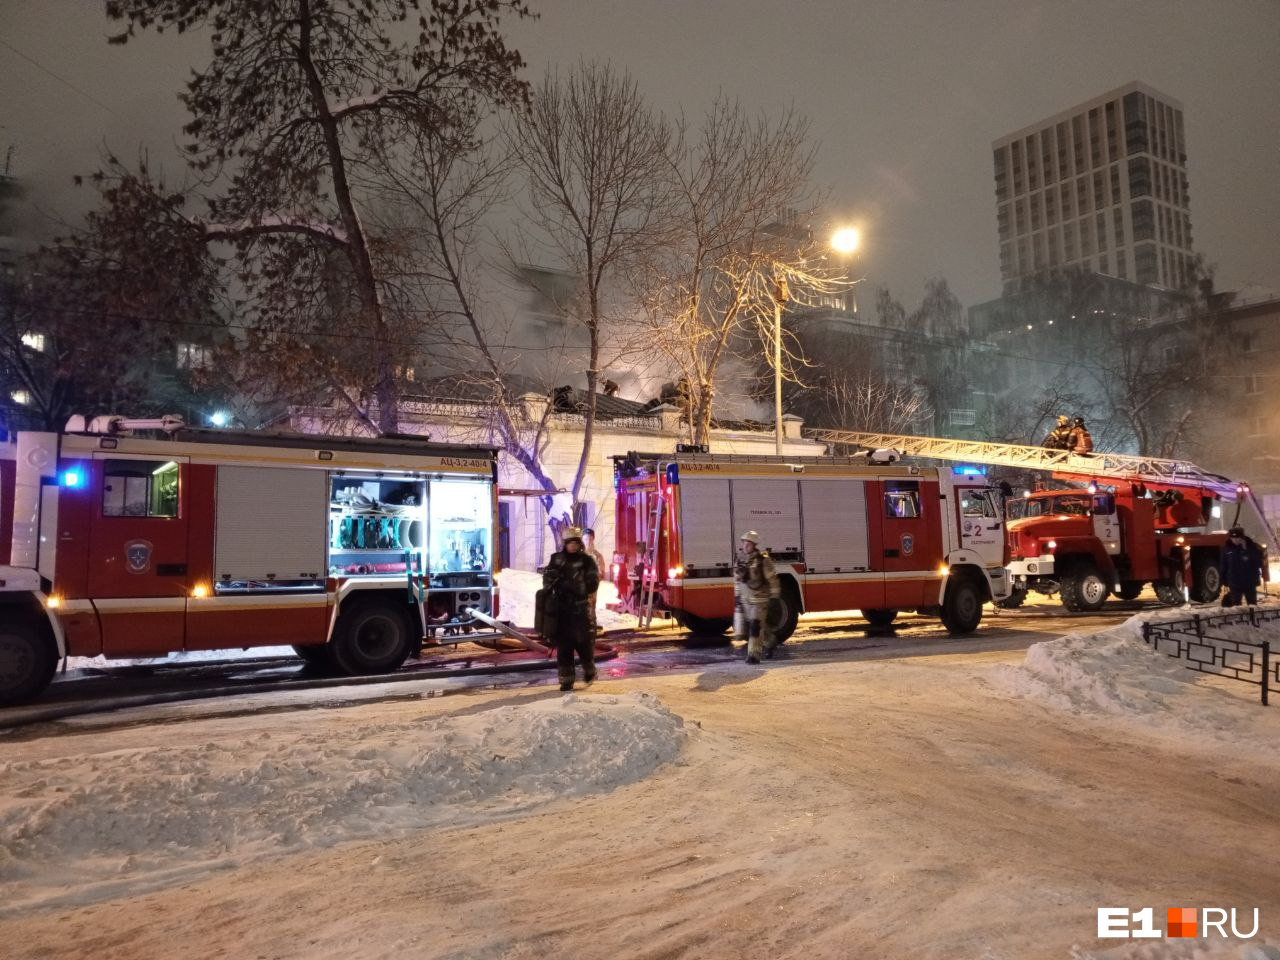 В невезучем особняке в центре Екатеринбурга прогорел уже пятый ресторан. На этот раз буквально — в пожаре